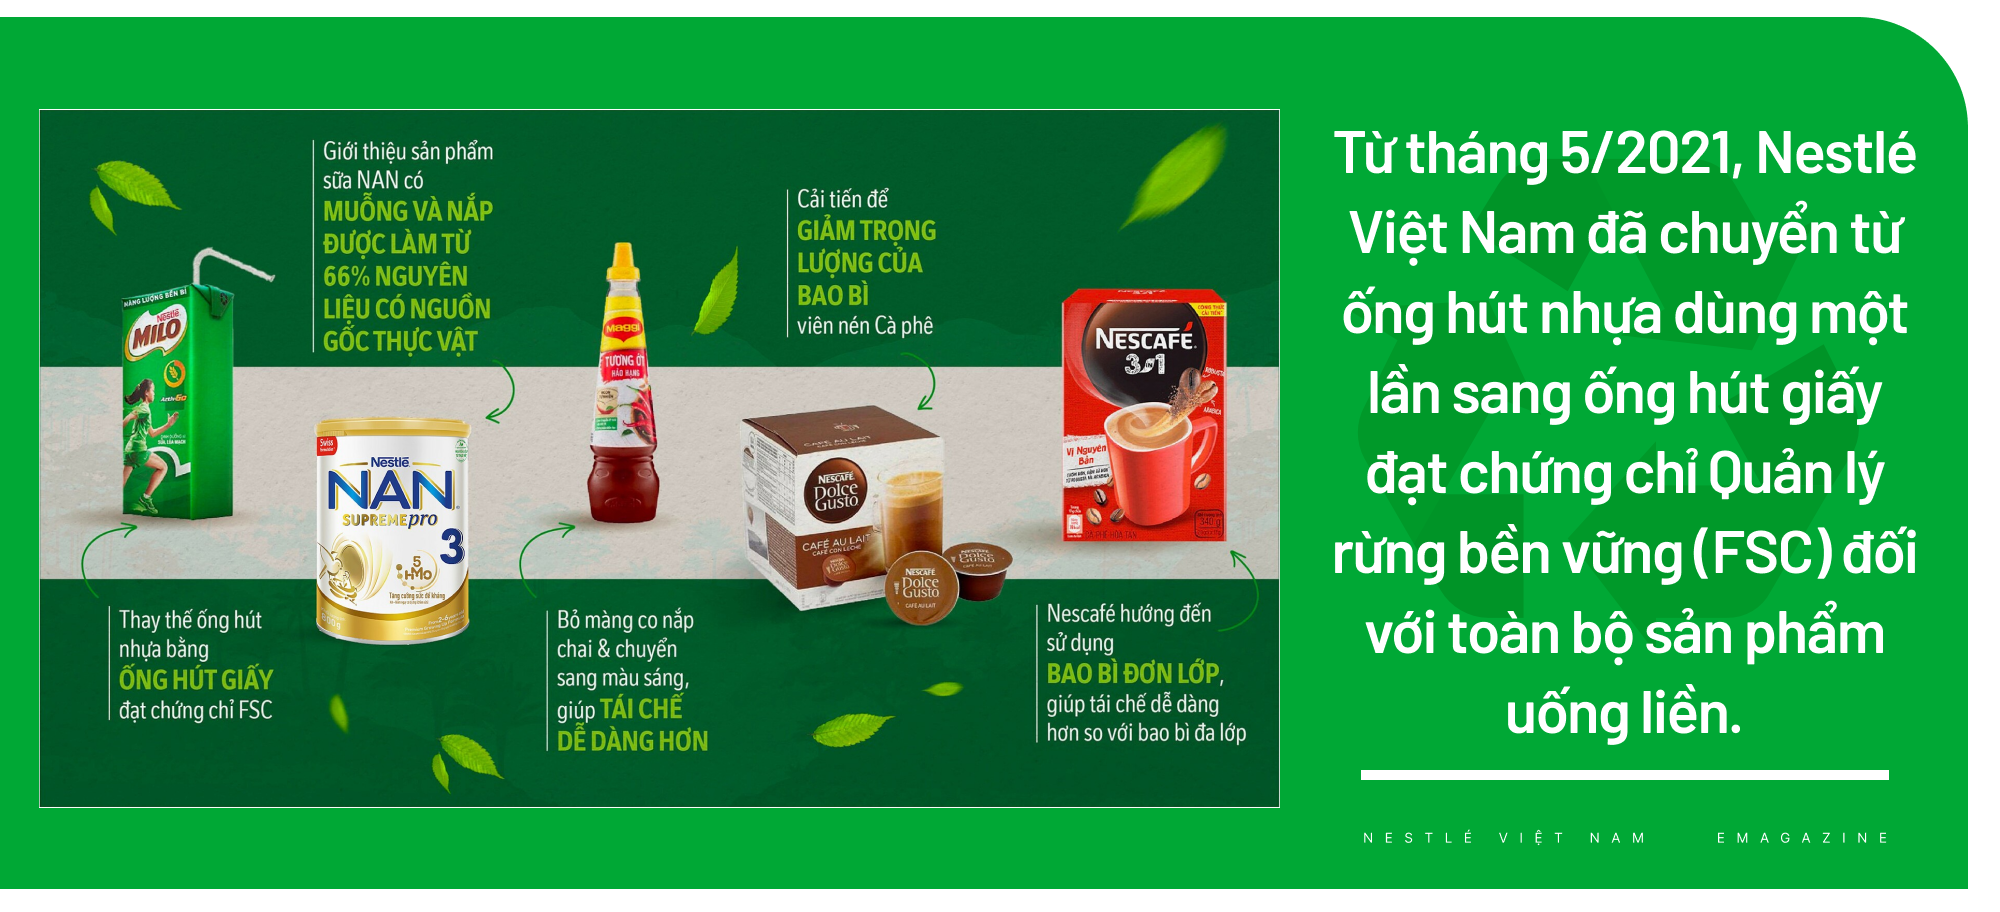 Nestlé Việt Nam áp dụng sáng kiến bao bì bền vững, xây dựng nền kinh tế tuần hoàn - Ảnh 2.